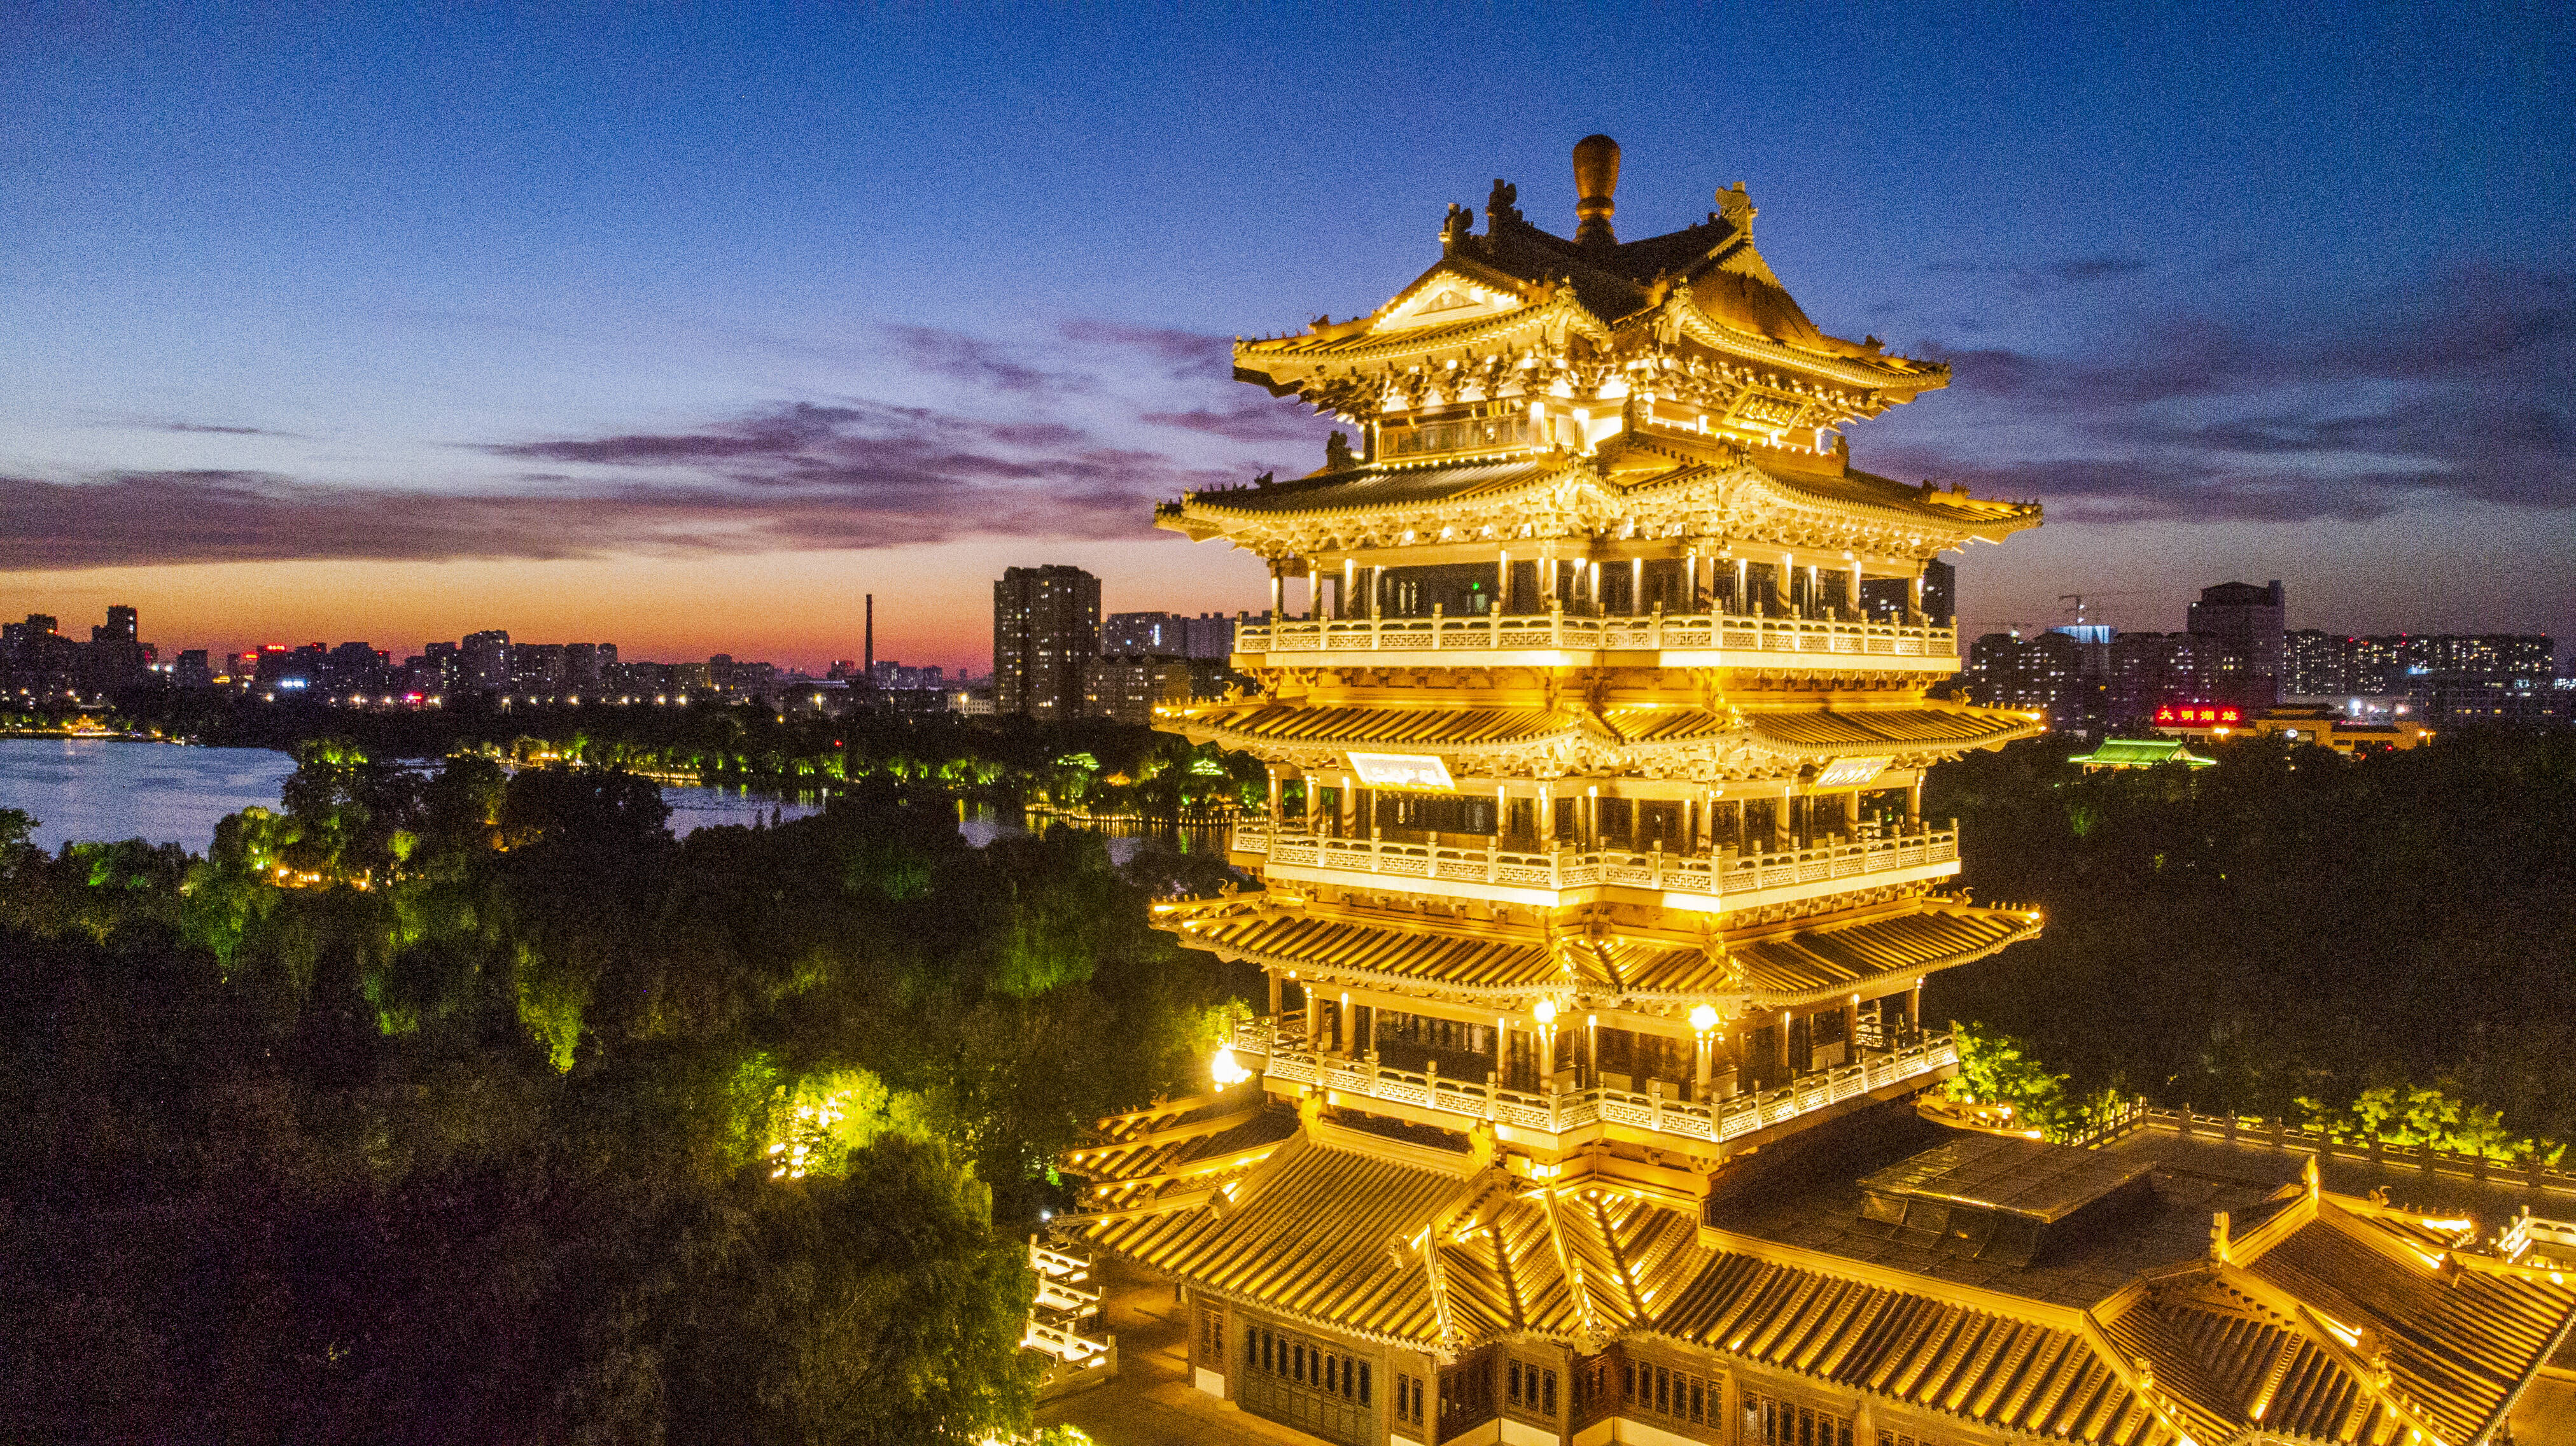 大明湖超然楼正式获评“中国历史文化名楼”称号 山东现有4座“名楼”